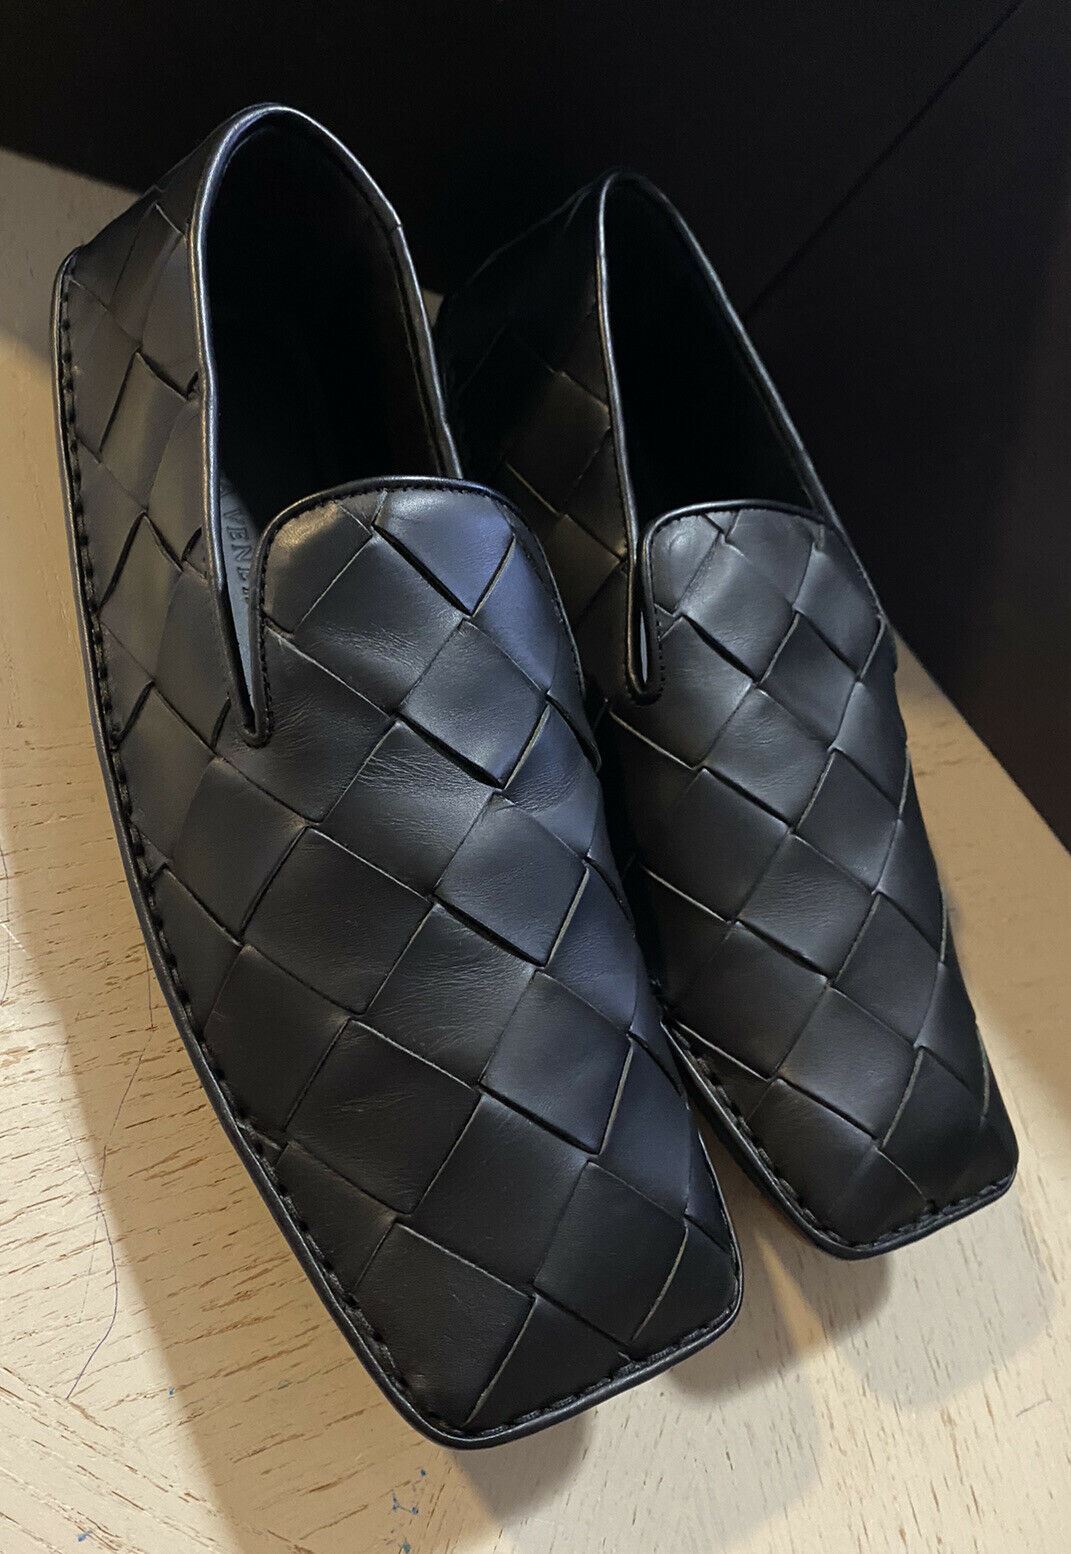 NIB $740 Bottega Veneta Men Leather Moccasin Driver Shoes Black 9 US/42 Eu